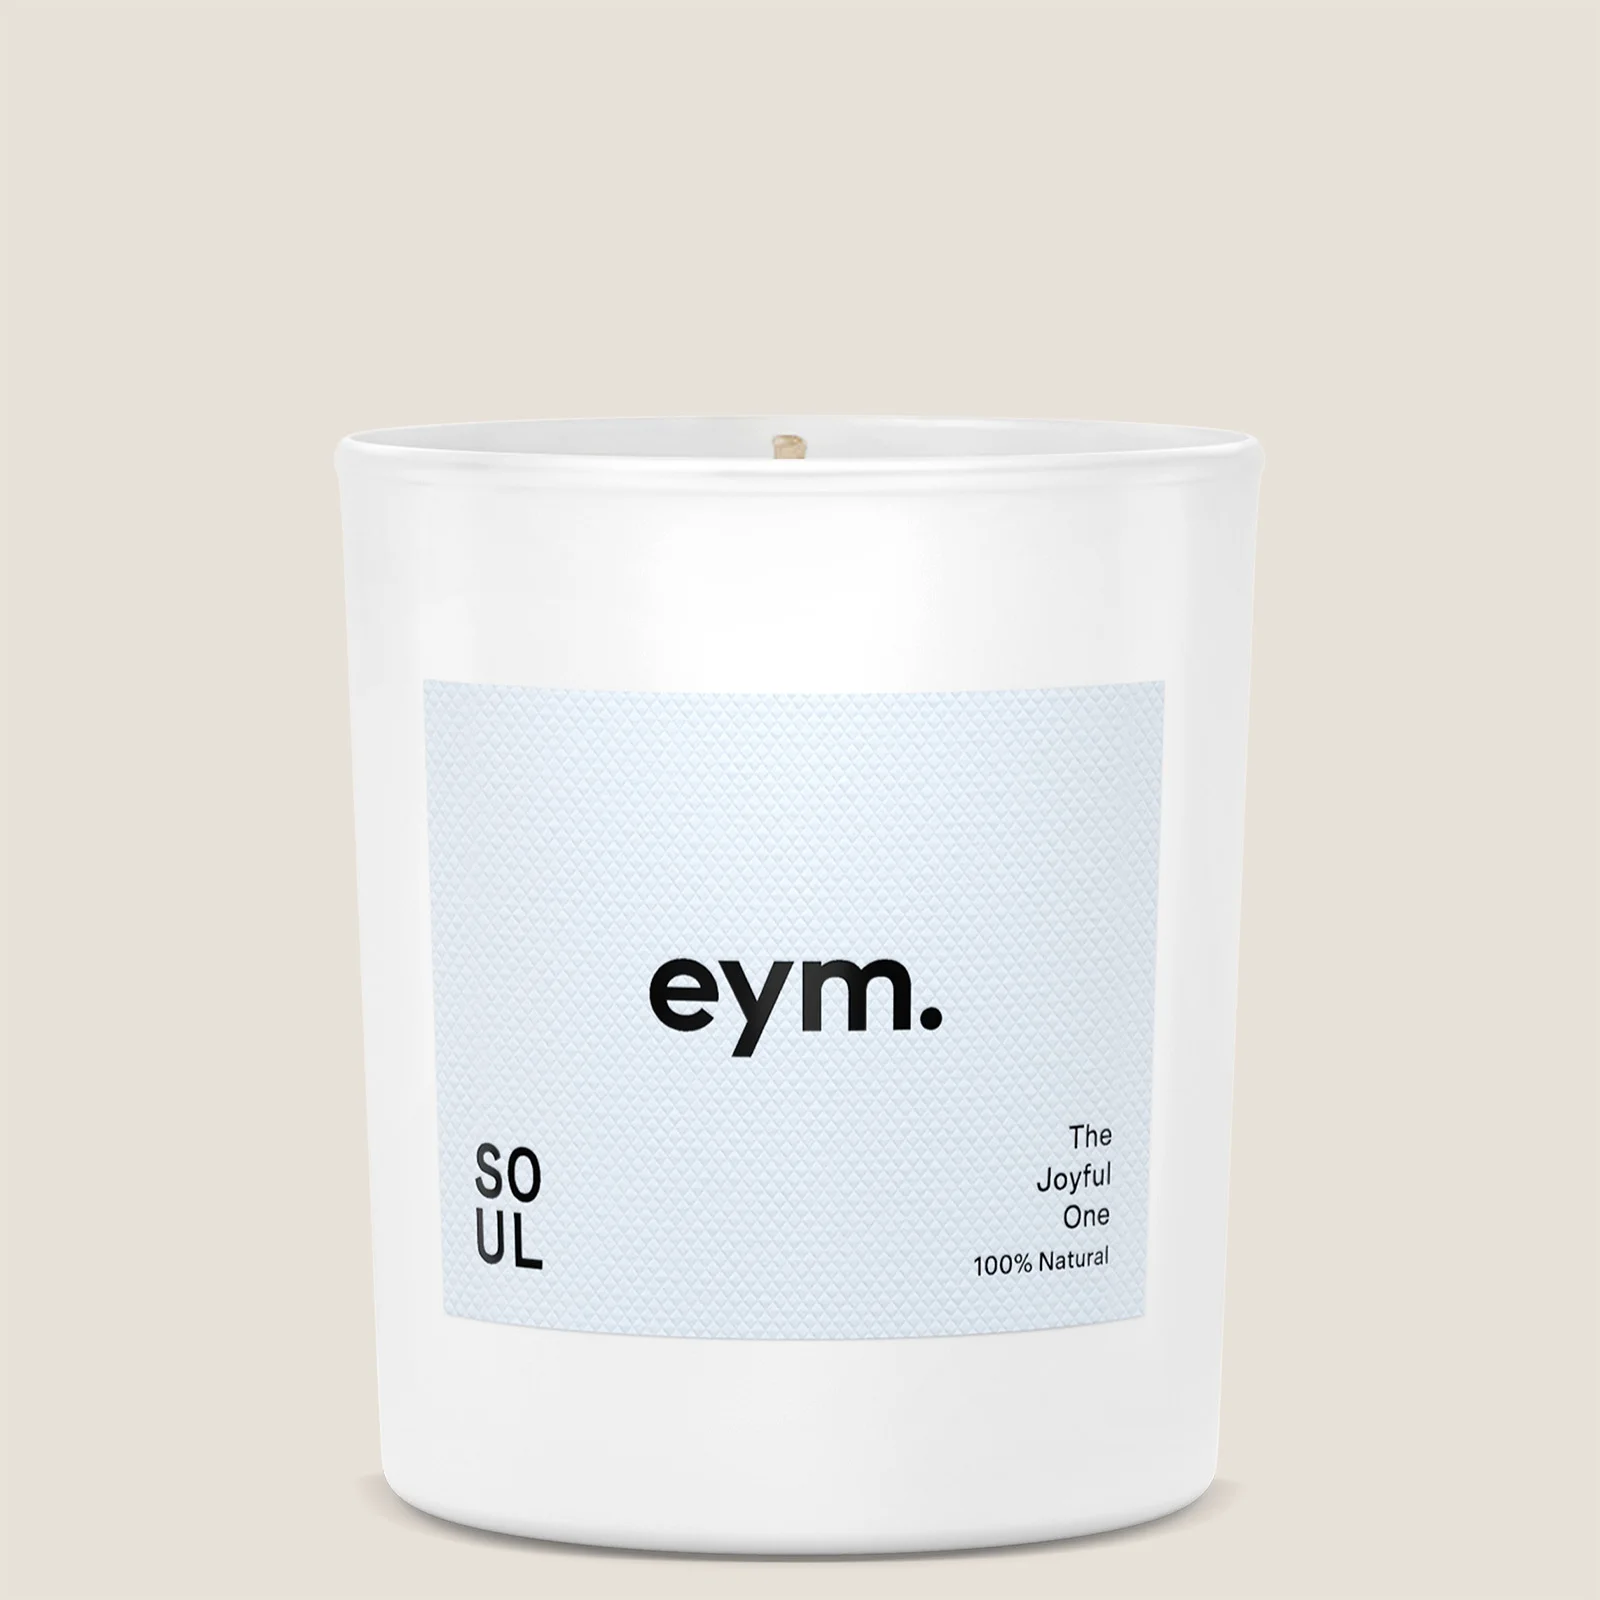 EYM Soul Candle - The Joyful One Image 1